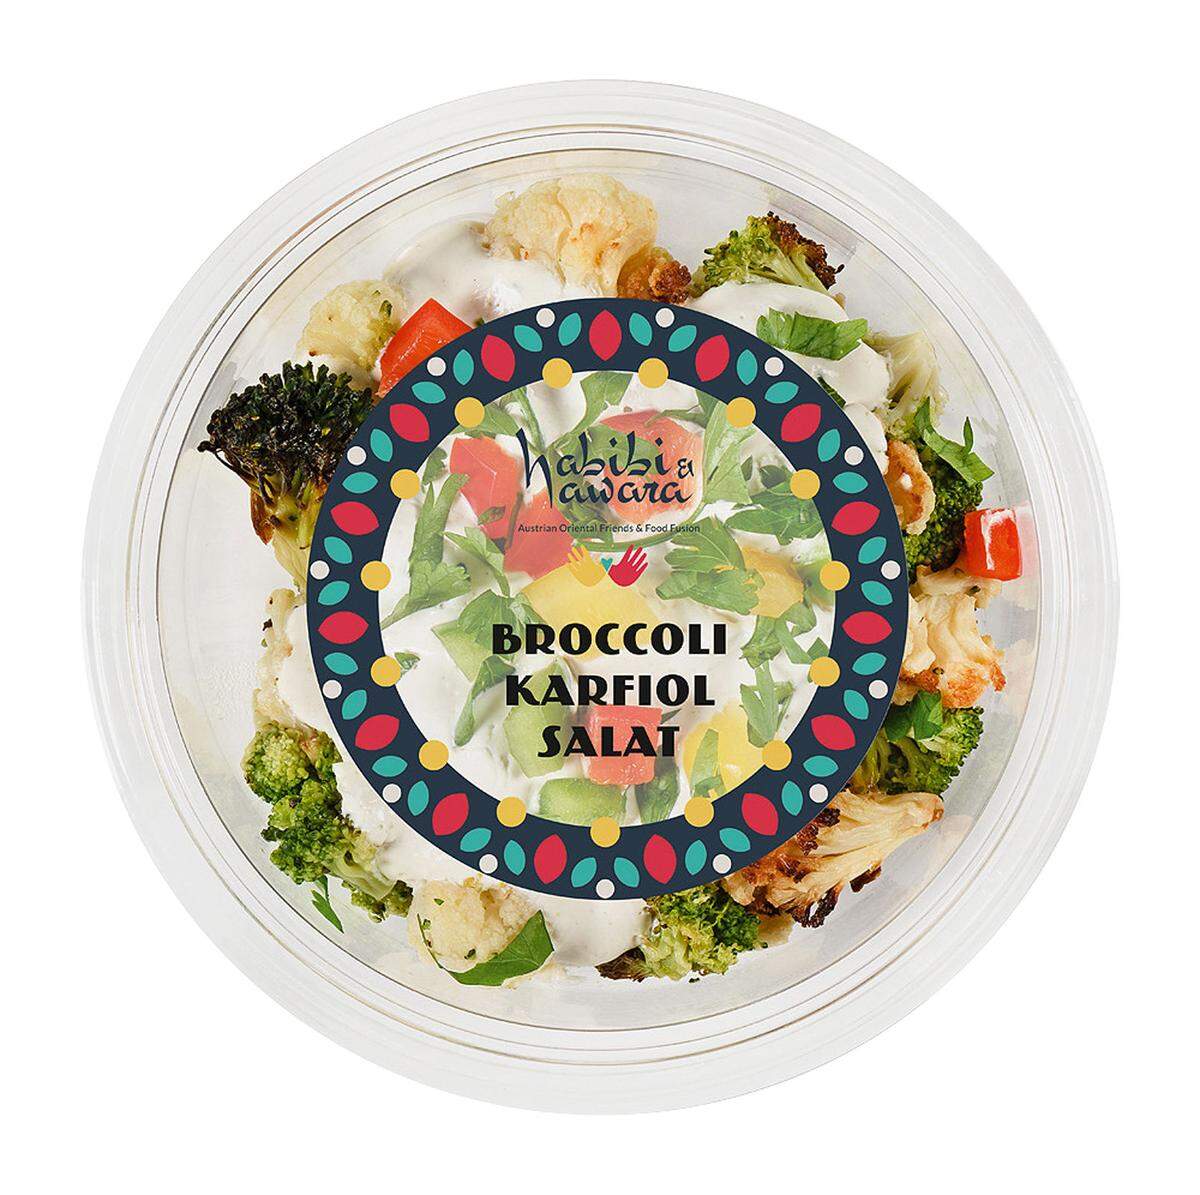 Es ist, was man ein Vorzeigeprojekt nennt: Das Lokal Habibi &amp; Hawara im ersten Wiener Bezirk, in dem Menschen mit Fluchterfahrungen kochen und servieren. Nun sind einige der Salate und Hummus-Variationen unter der etablierten Marke auch bei Billa und Merkur zu kaufen; zubereitet allerdings von Wojnar, bekannt für Tankstellensandwiches. Fader Brokkoli-Karfiol-Salat, Süßkartoffelsalat, „Arabischer Salat“ aus sehr grob geschnittenem Paprika, Mangohummus – sagen wir so: Da ist noch Luft nach oben. Habibi &amp; Hawara bei Billa &amp; Merkur.